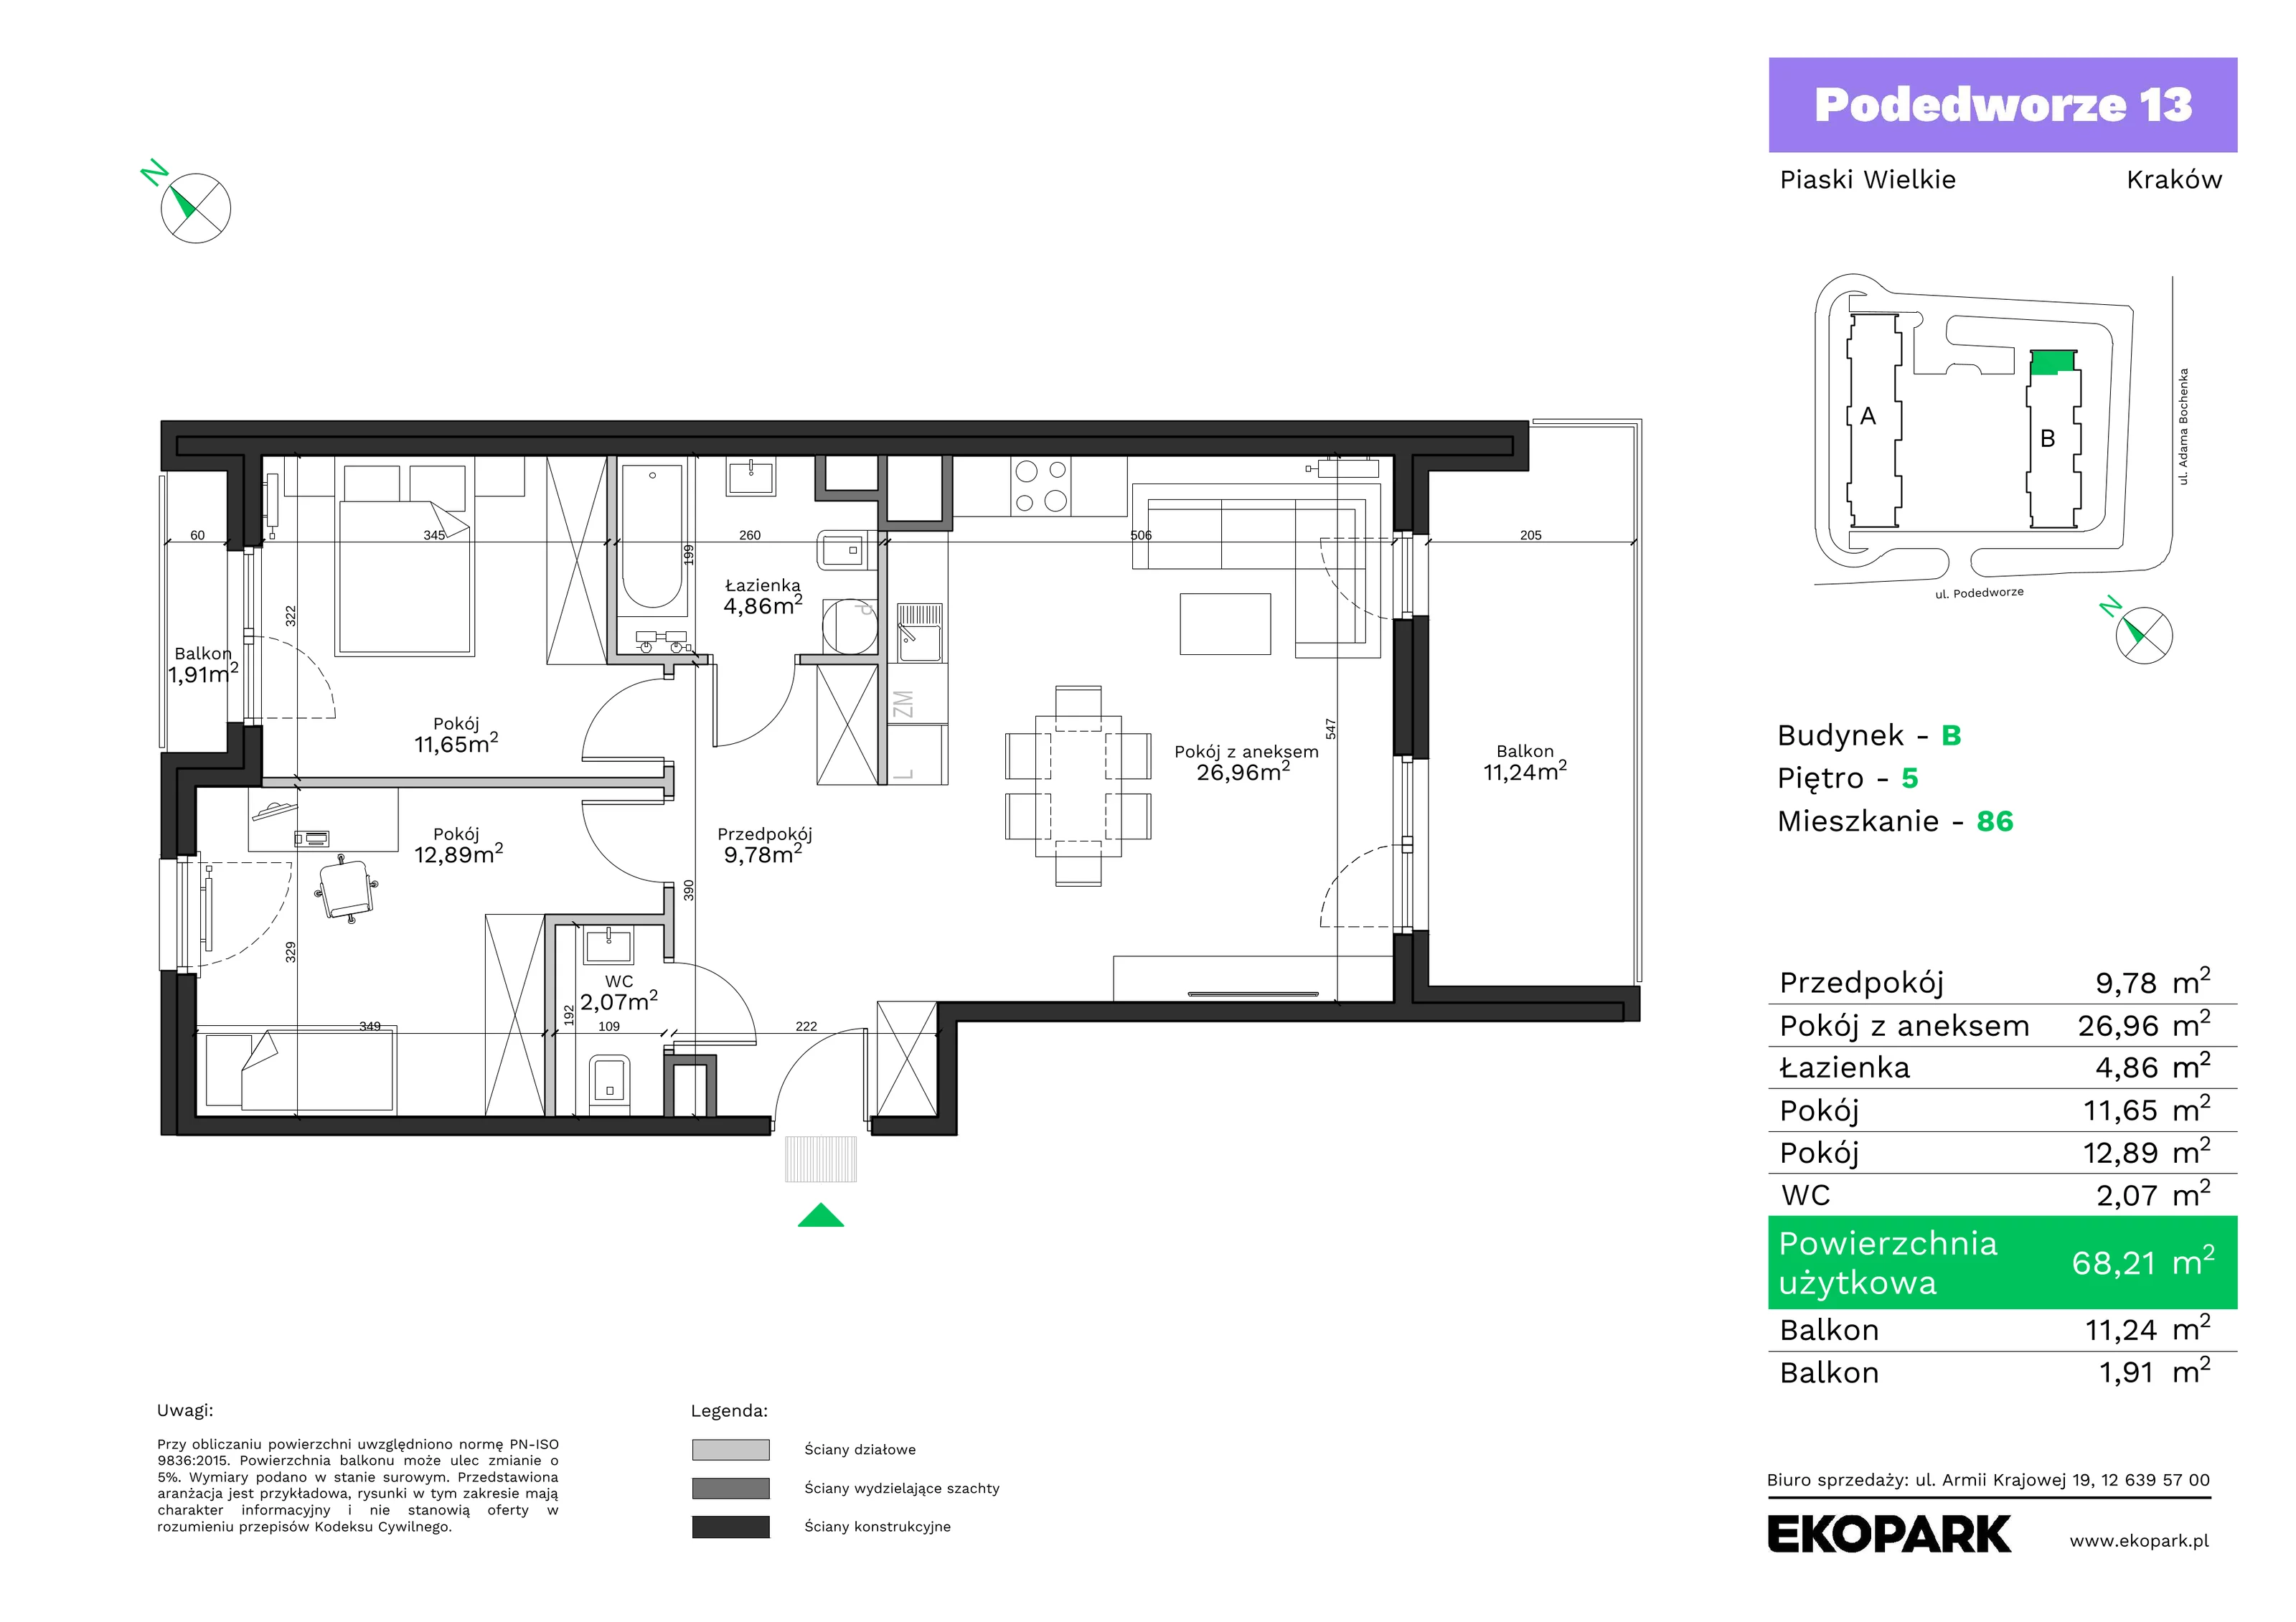 Mieszkanie 68,21 m², piętro 5, oferta nr B86, Podedworze 13, Kraków, Podgórze Duchackie, Piaski Wielkie, ul. Podedworze 13